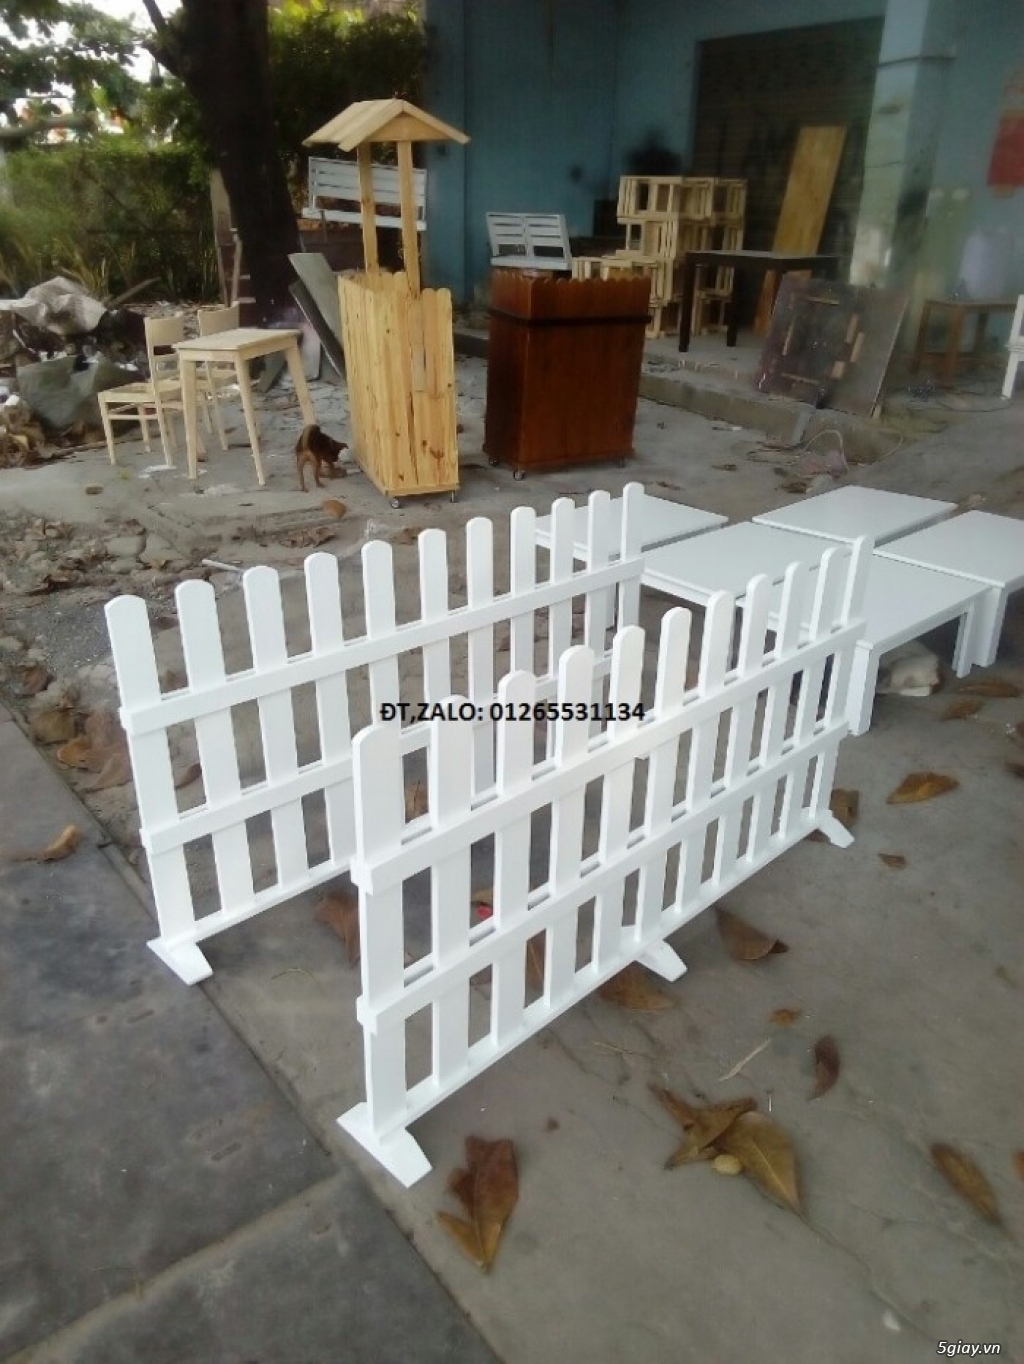 Nơi bán hàng rào gỗ trang trí đẹp giá rẻ HCM, Bình Dương, Đồng Nai ...